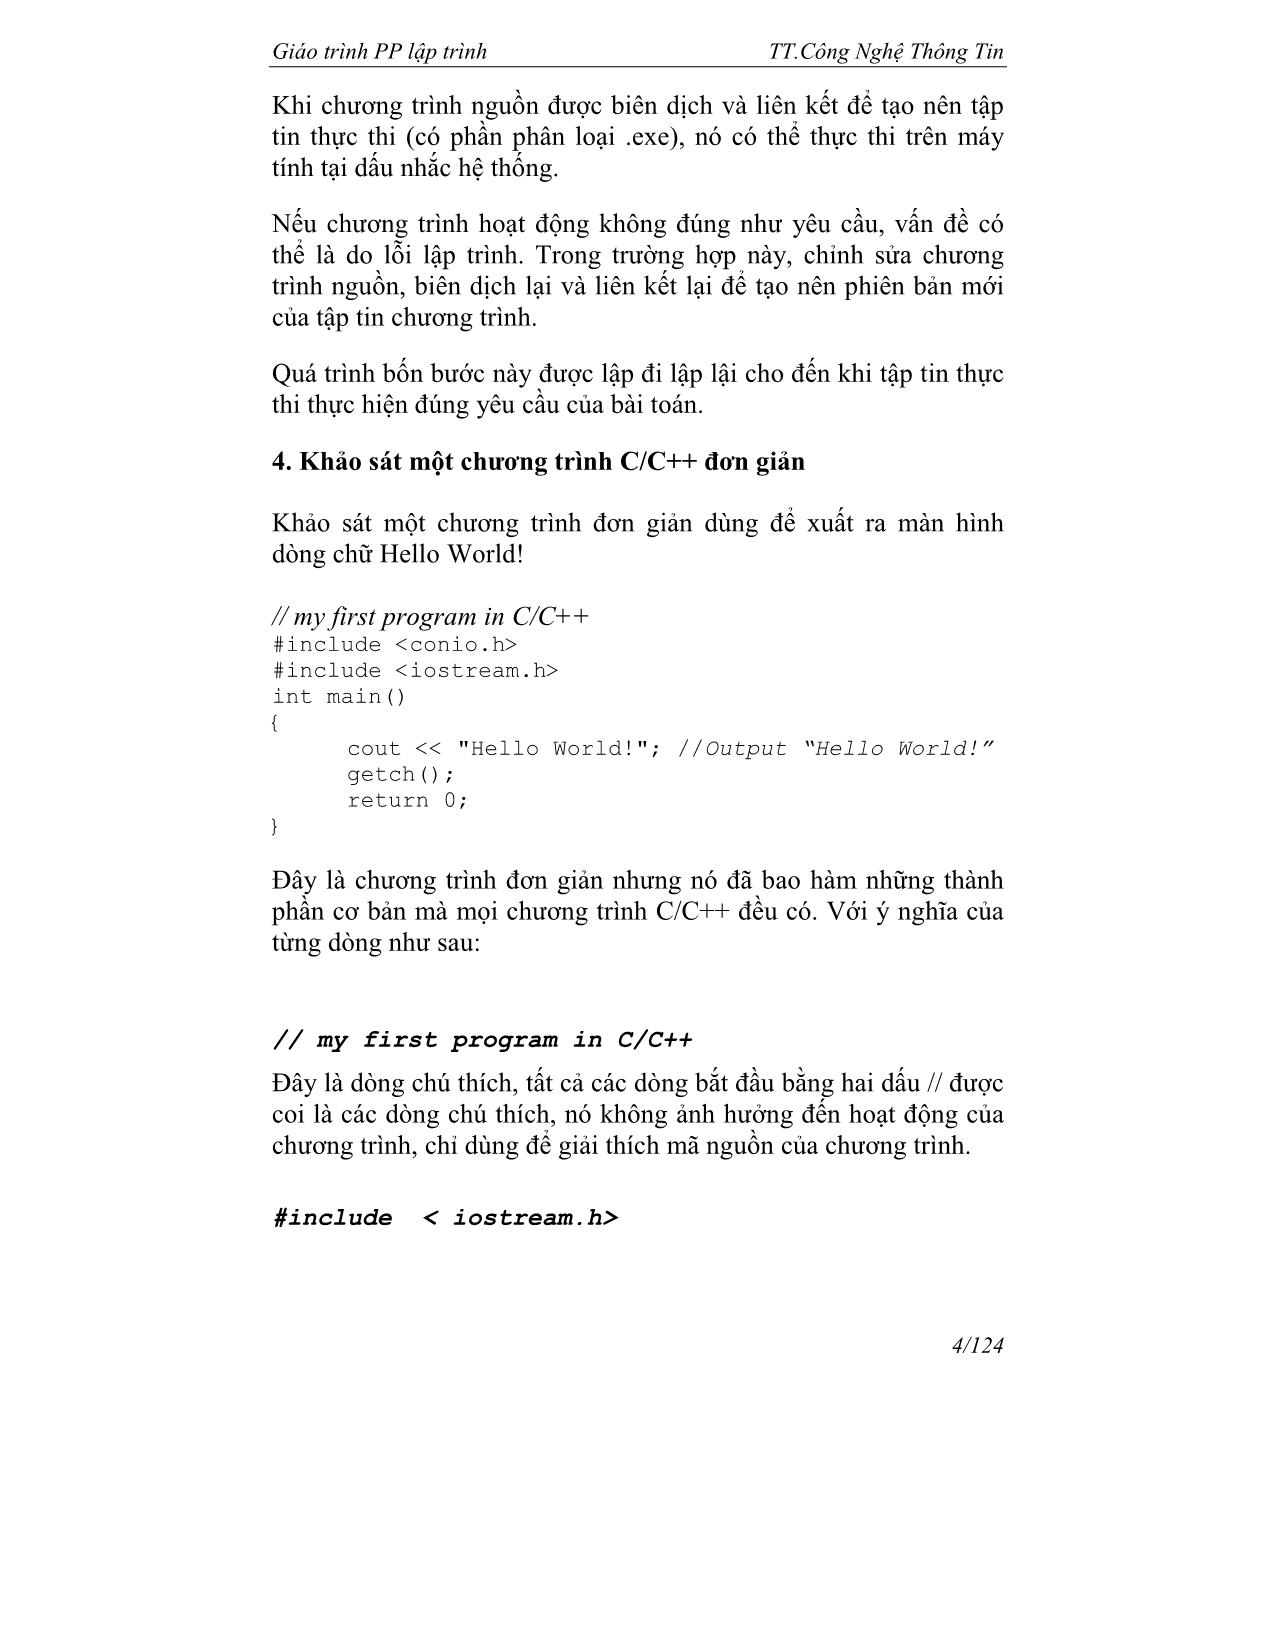 Giáo trình về phương pháp lập trình trang 5